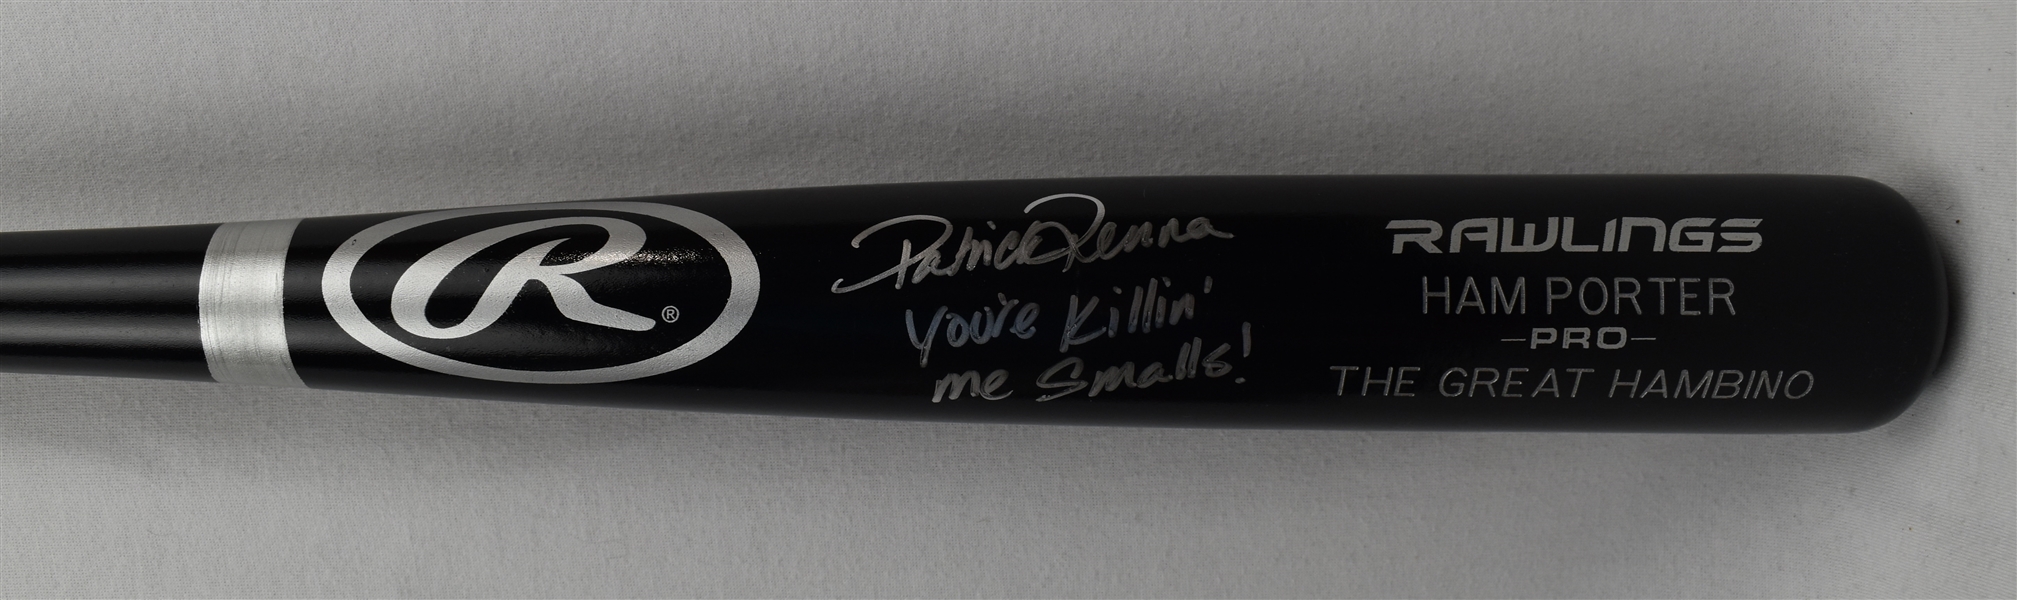 Patrick Renna "Youre Killin Me Smalls" Autographed & Inscribed Bat